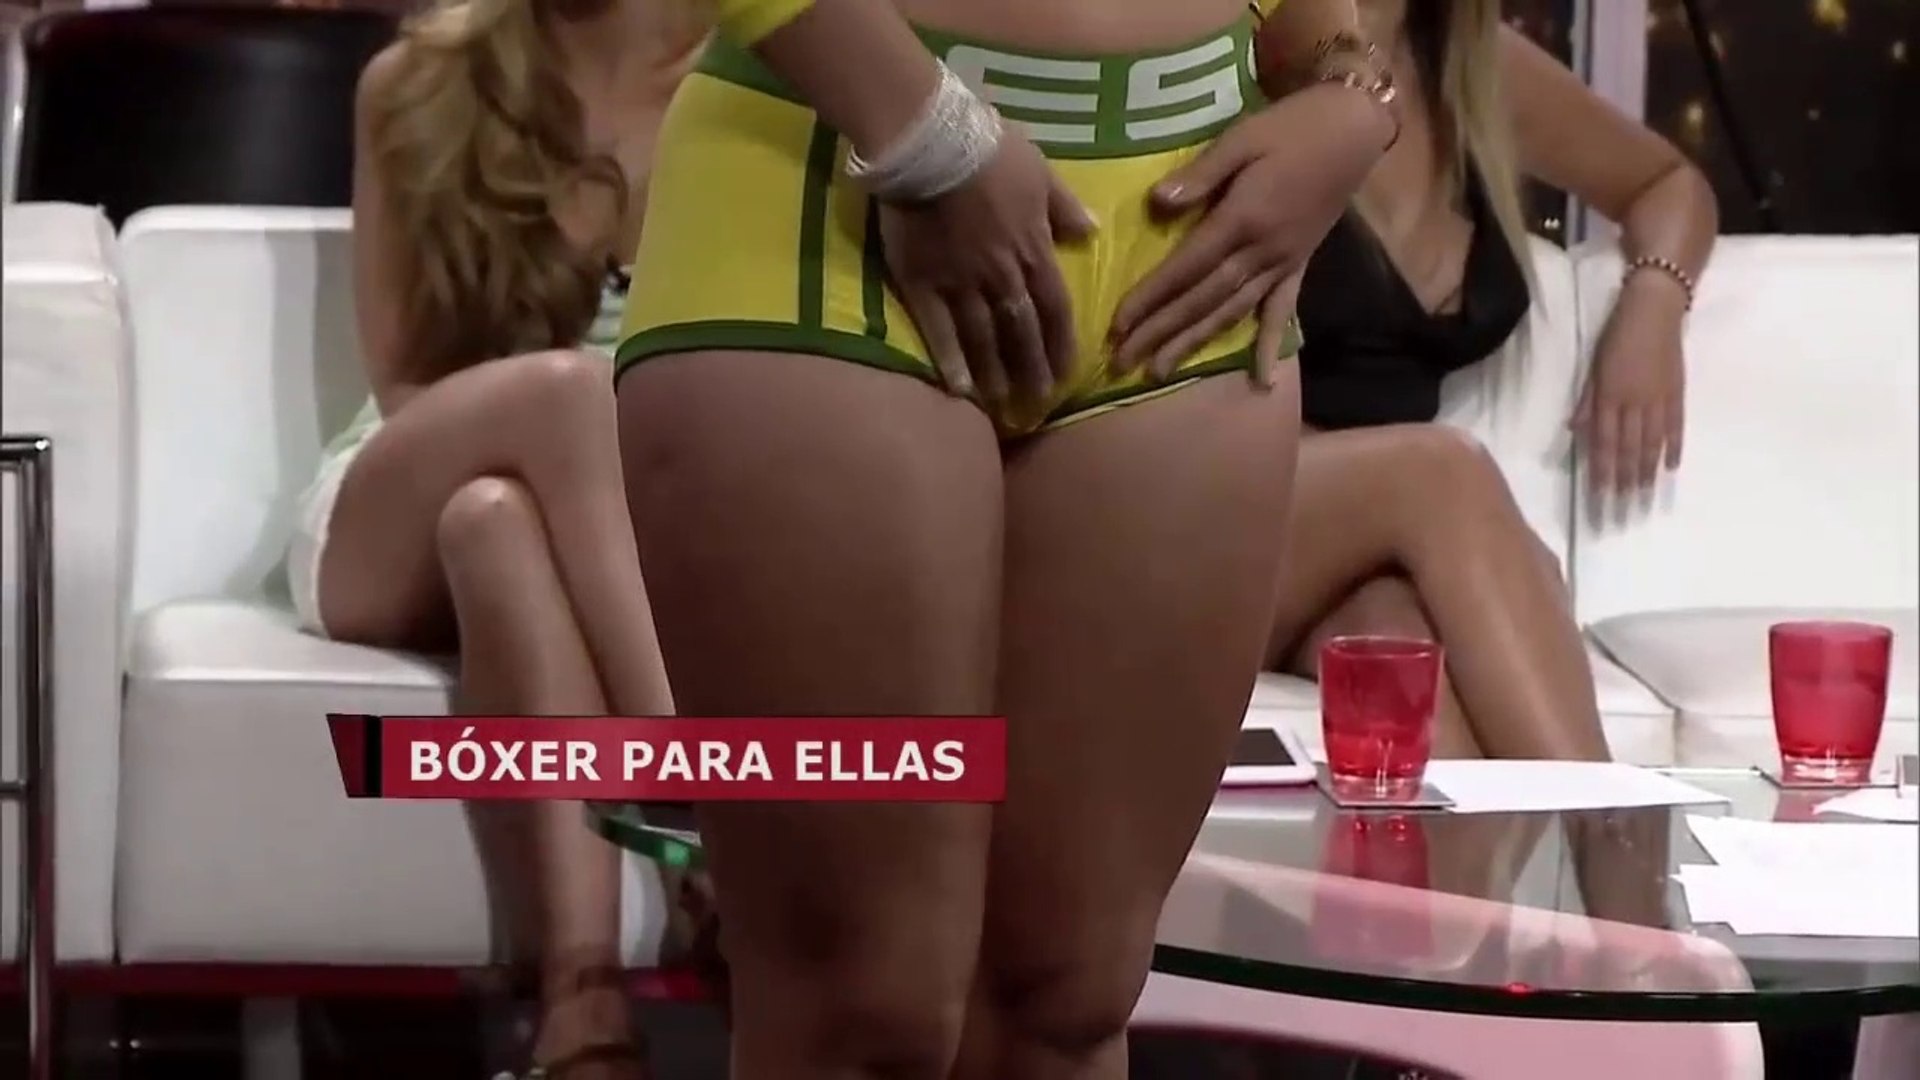 Chicas Muestran Sus Boxers En Toc Show - Descuidos de Mujeres en Programas  de Televisión Enamorándonos - Vídeo Dailymotion